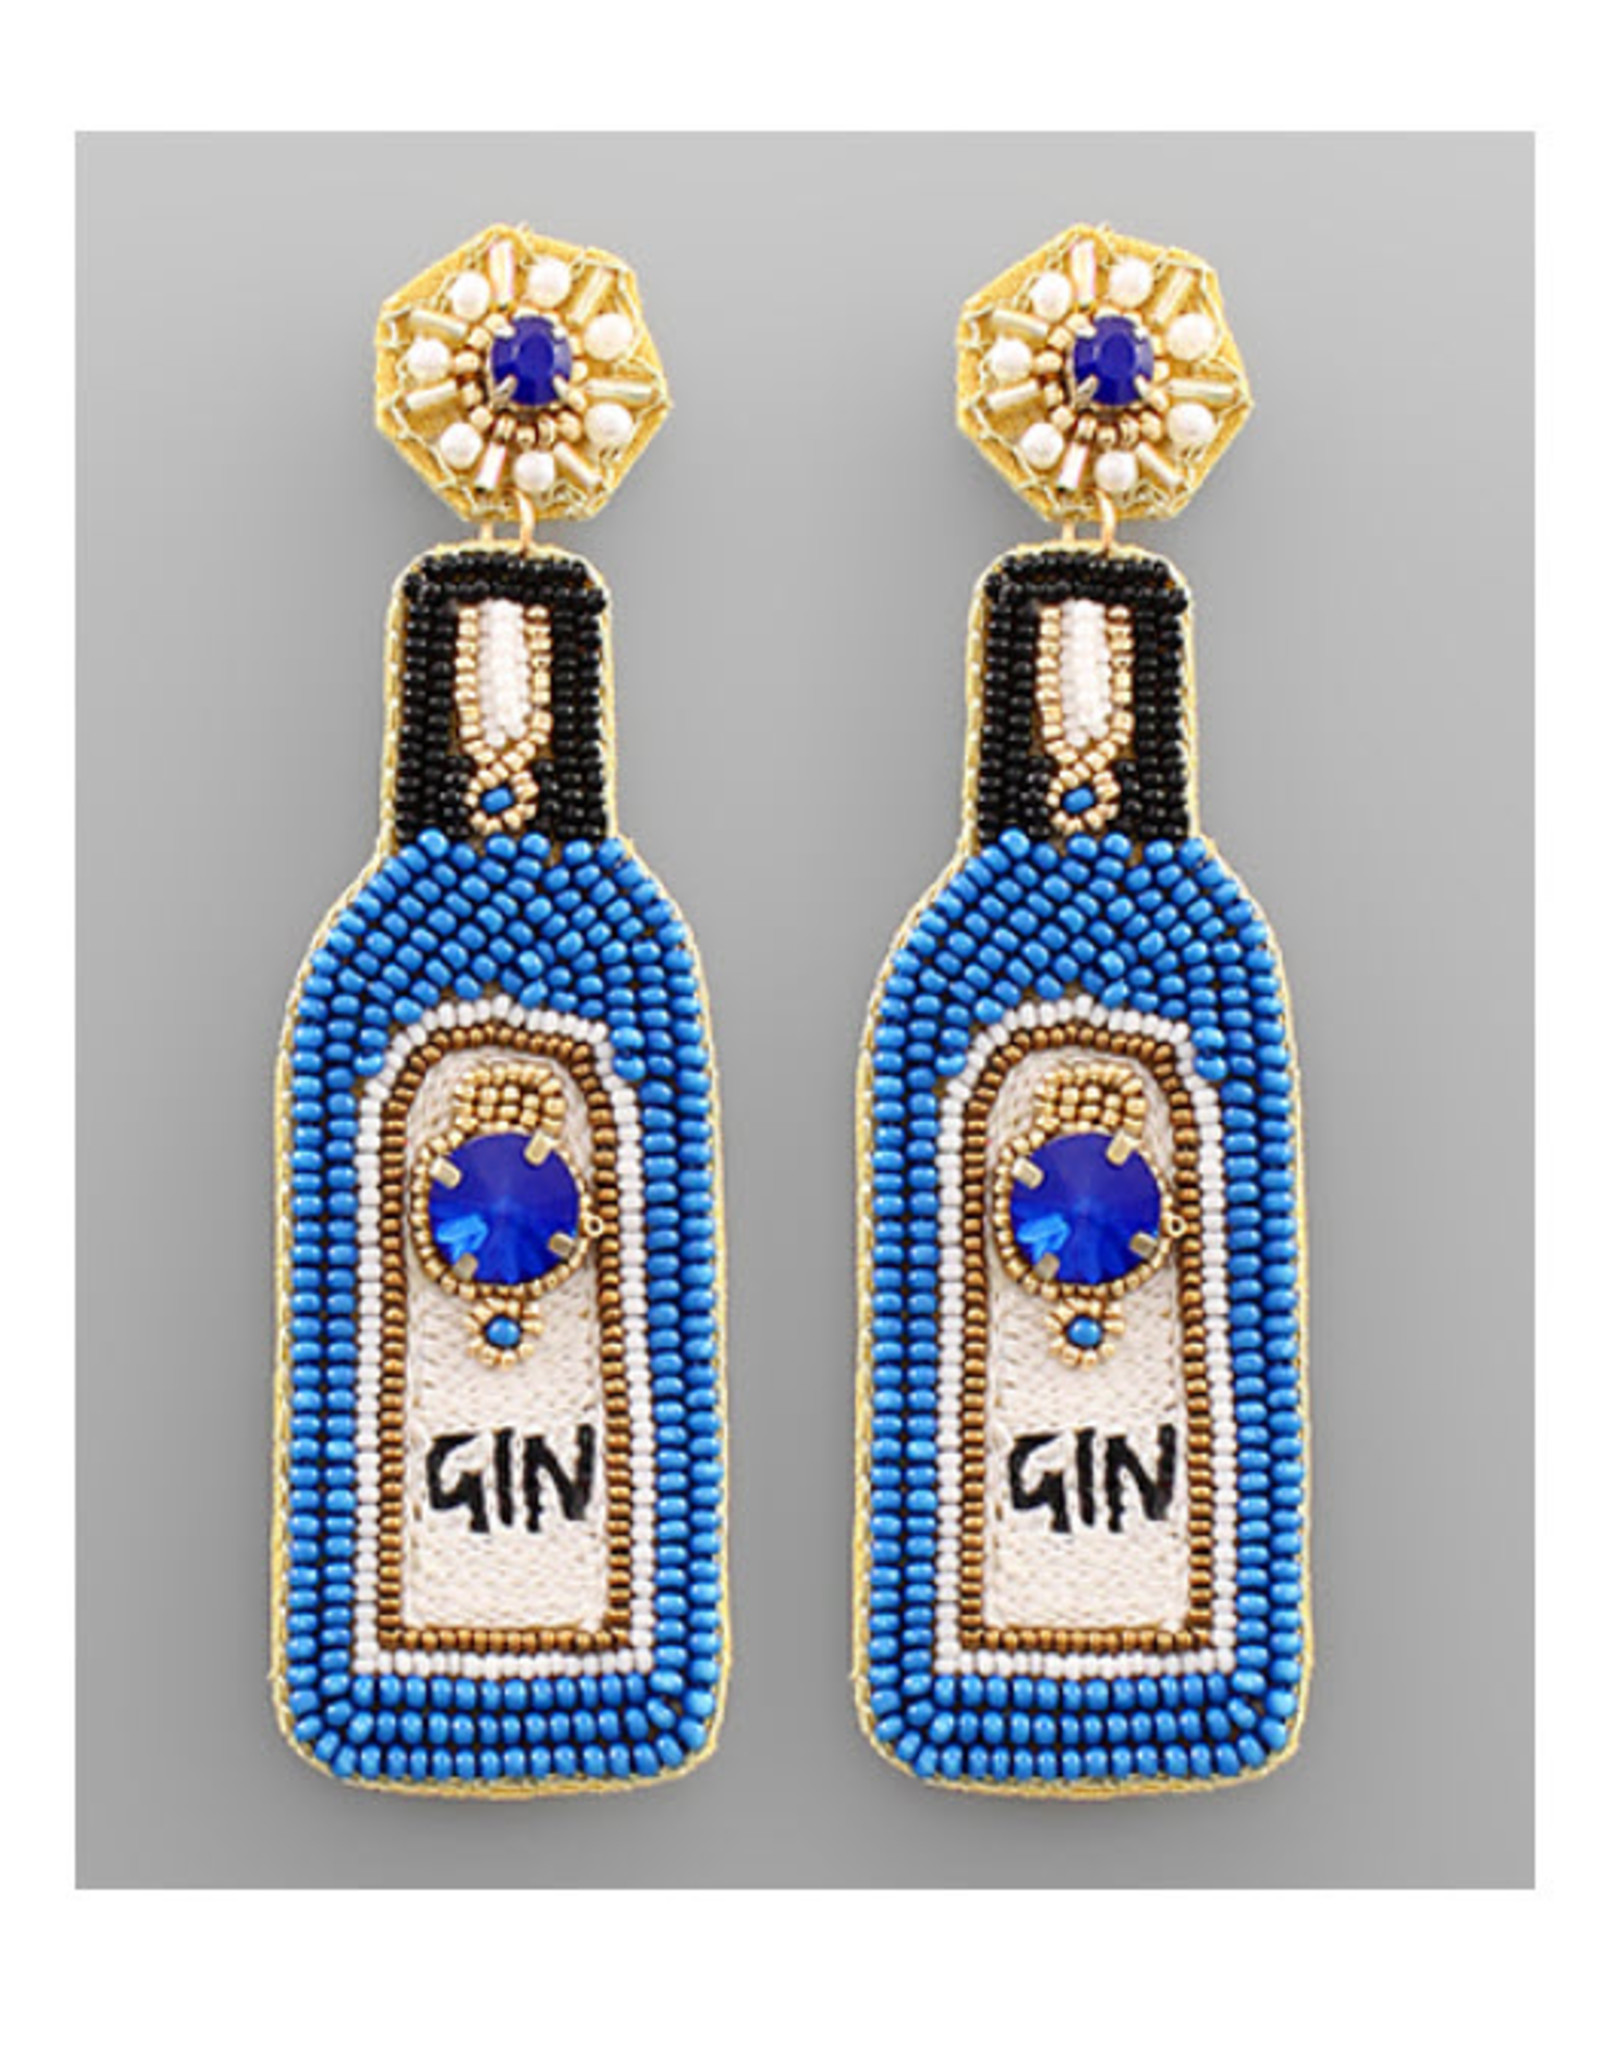 Blue Gin Bottle Bead Earrings